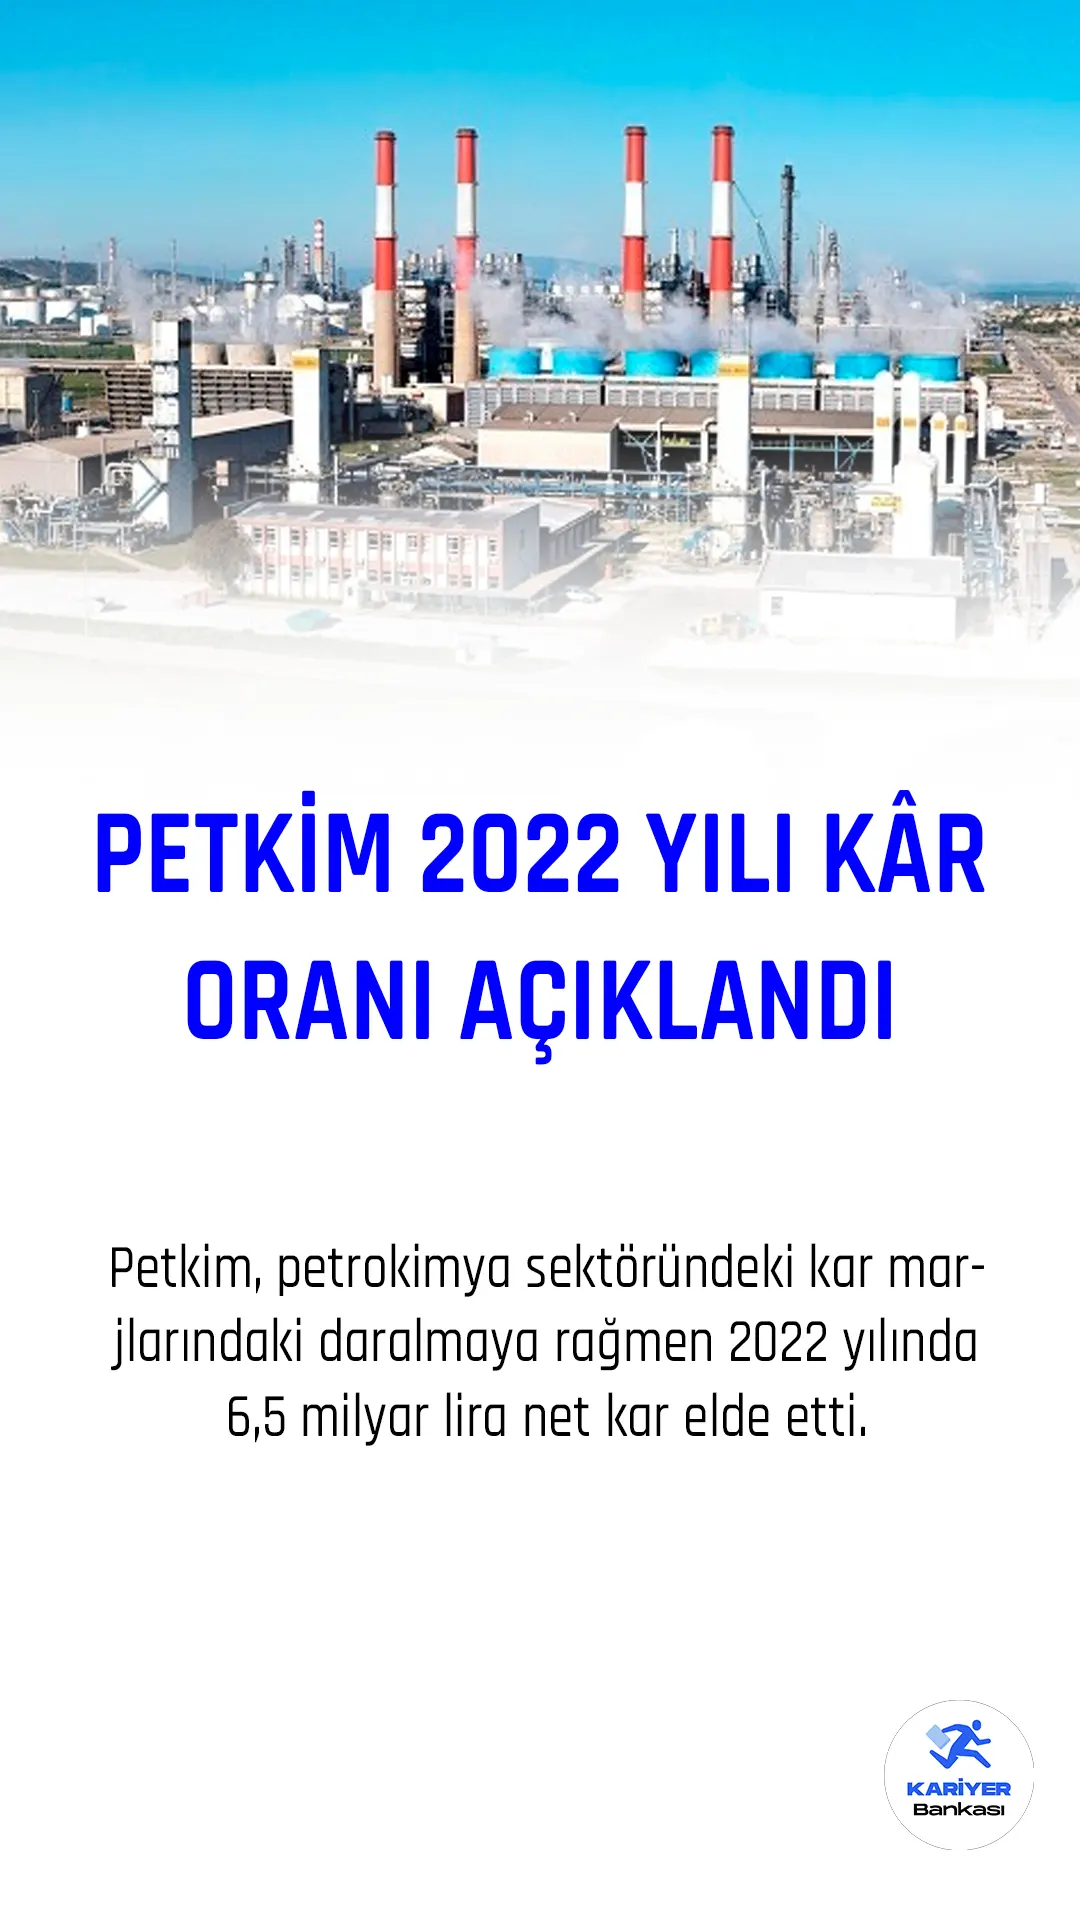 Petkim, petrokimya sektöründeki kar marjlarındaki daralmaya rağmen 2022 yılında 6,5 milyar lira net kar elde etti.